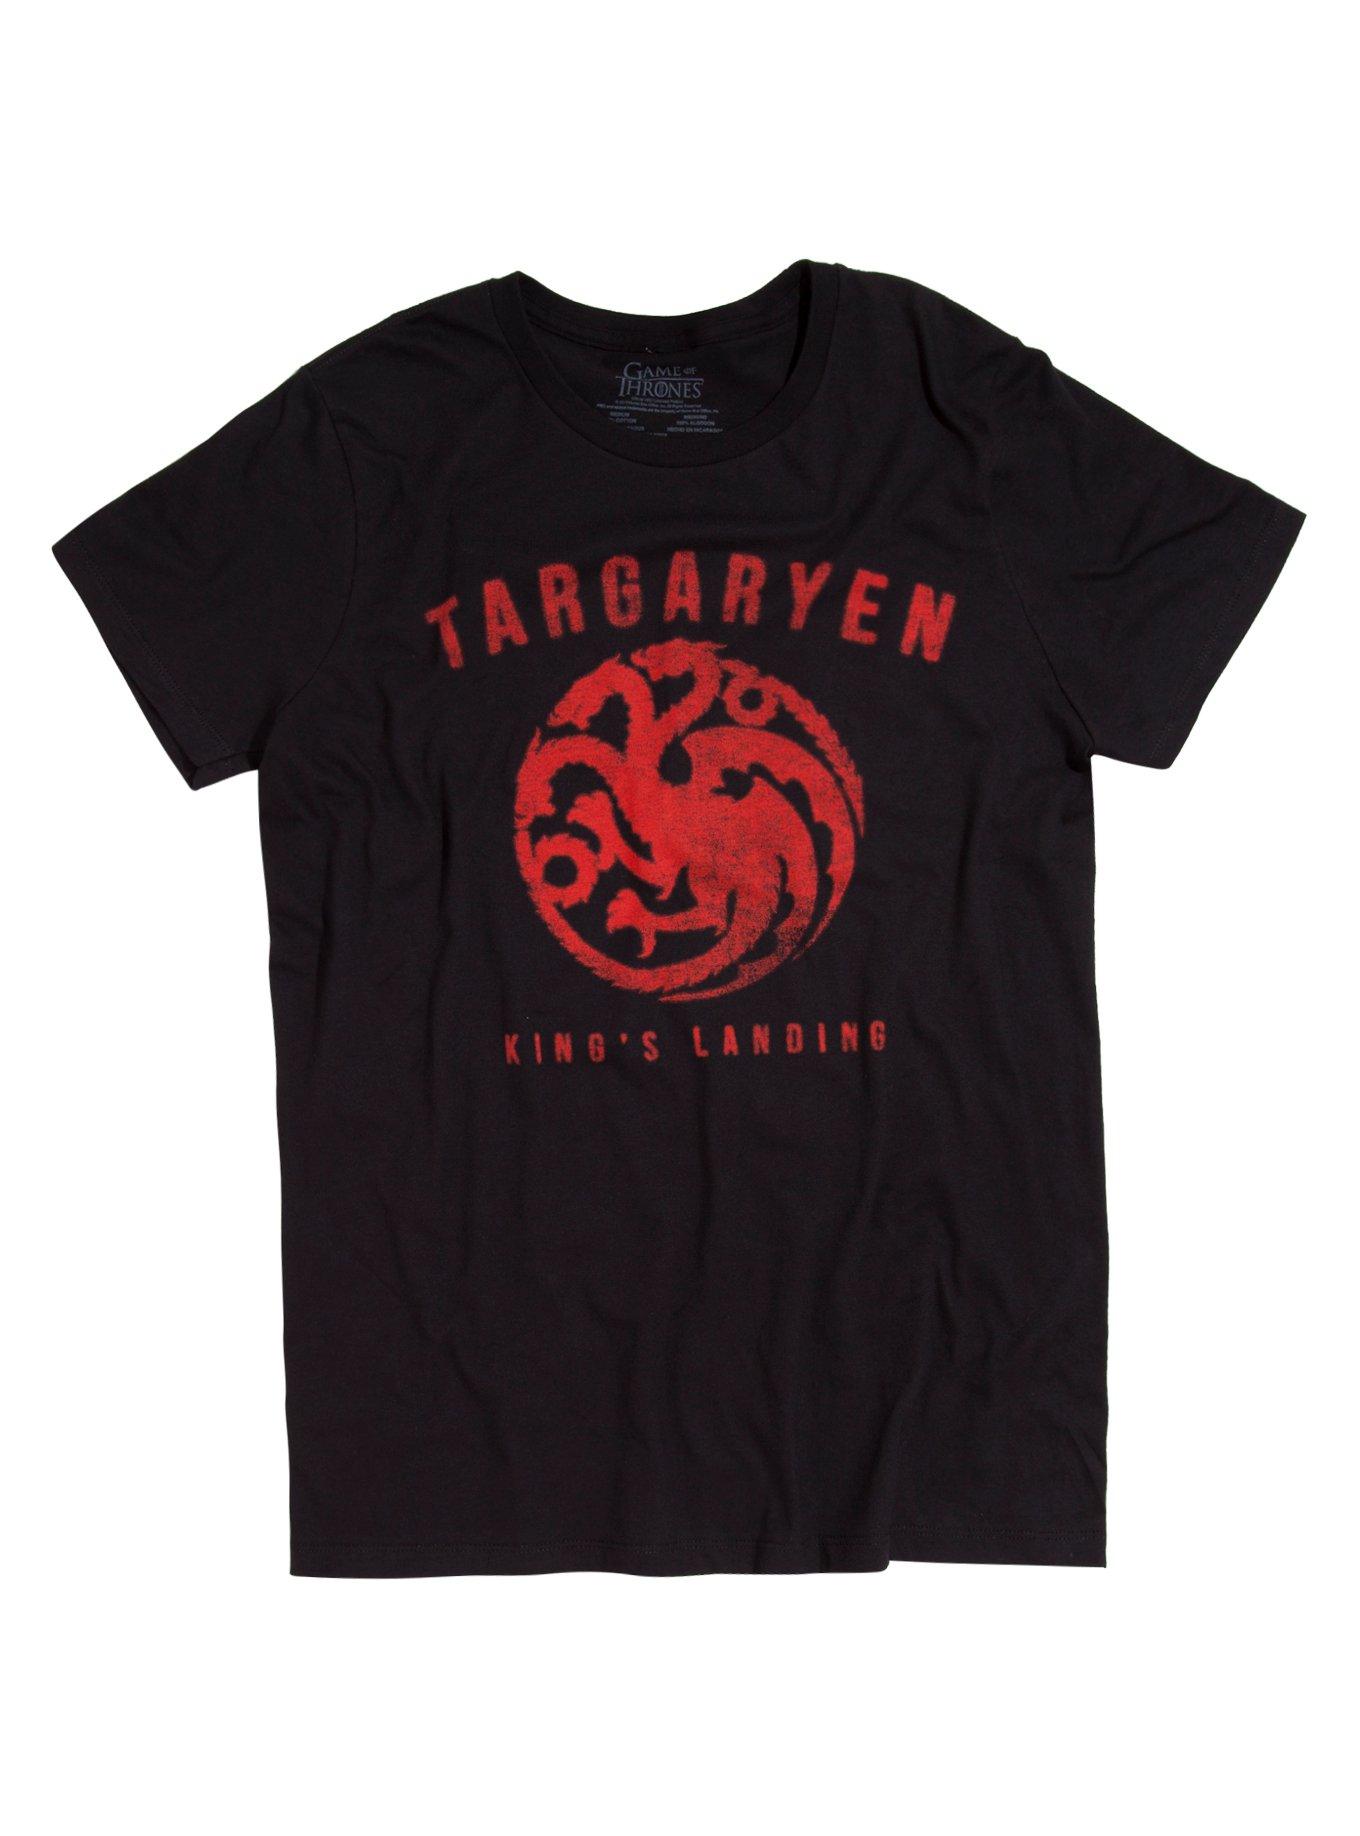 Game Of Thrones Targaryen King's Landing T-Shirt, BLACK, hi-res